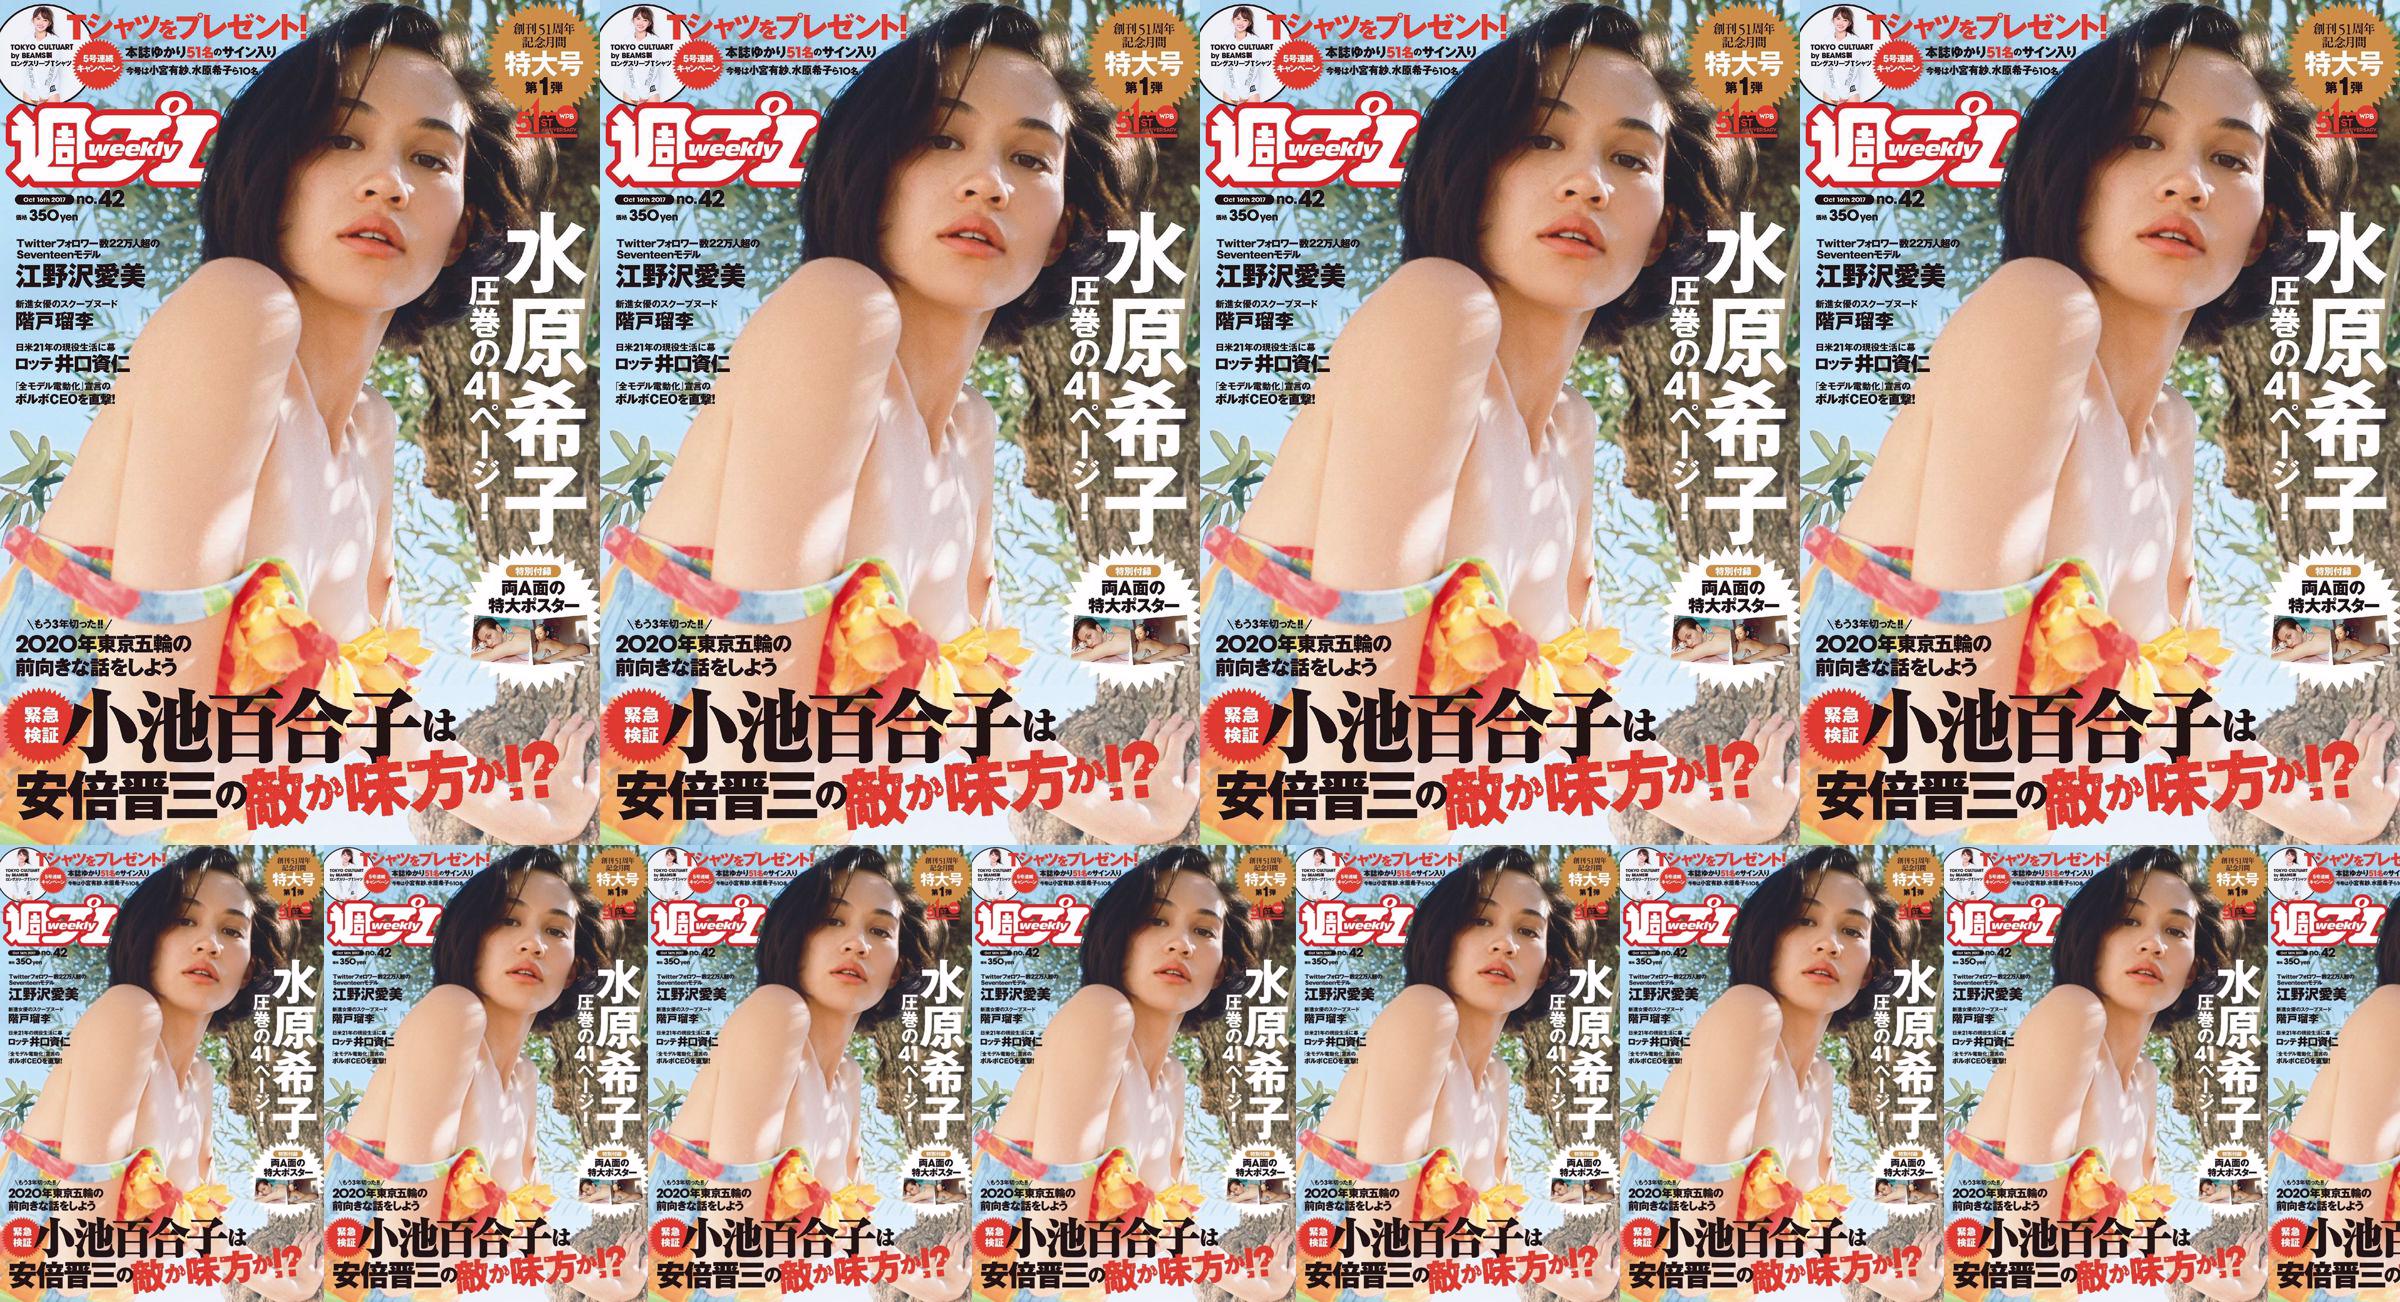 Kiko Mizuhara Manami Enosawa Serina Fukui Miu Nakamura Ruri Shinato [Weekly Playboy] 2017 No.42 Photo Magazine No.0331a3 Page 1